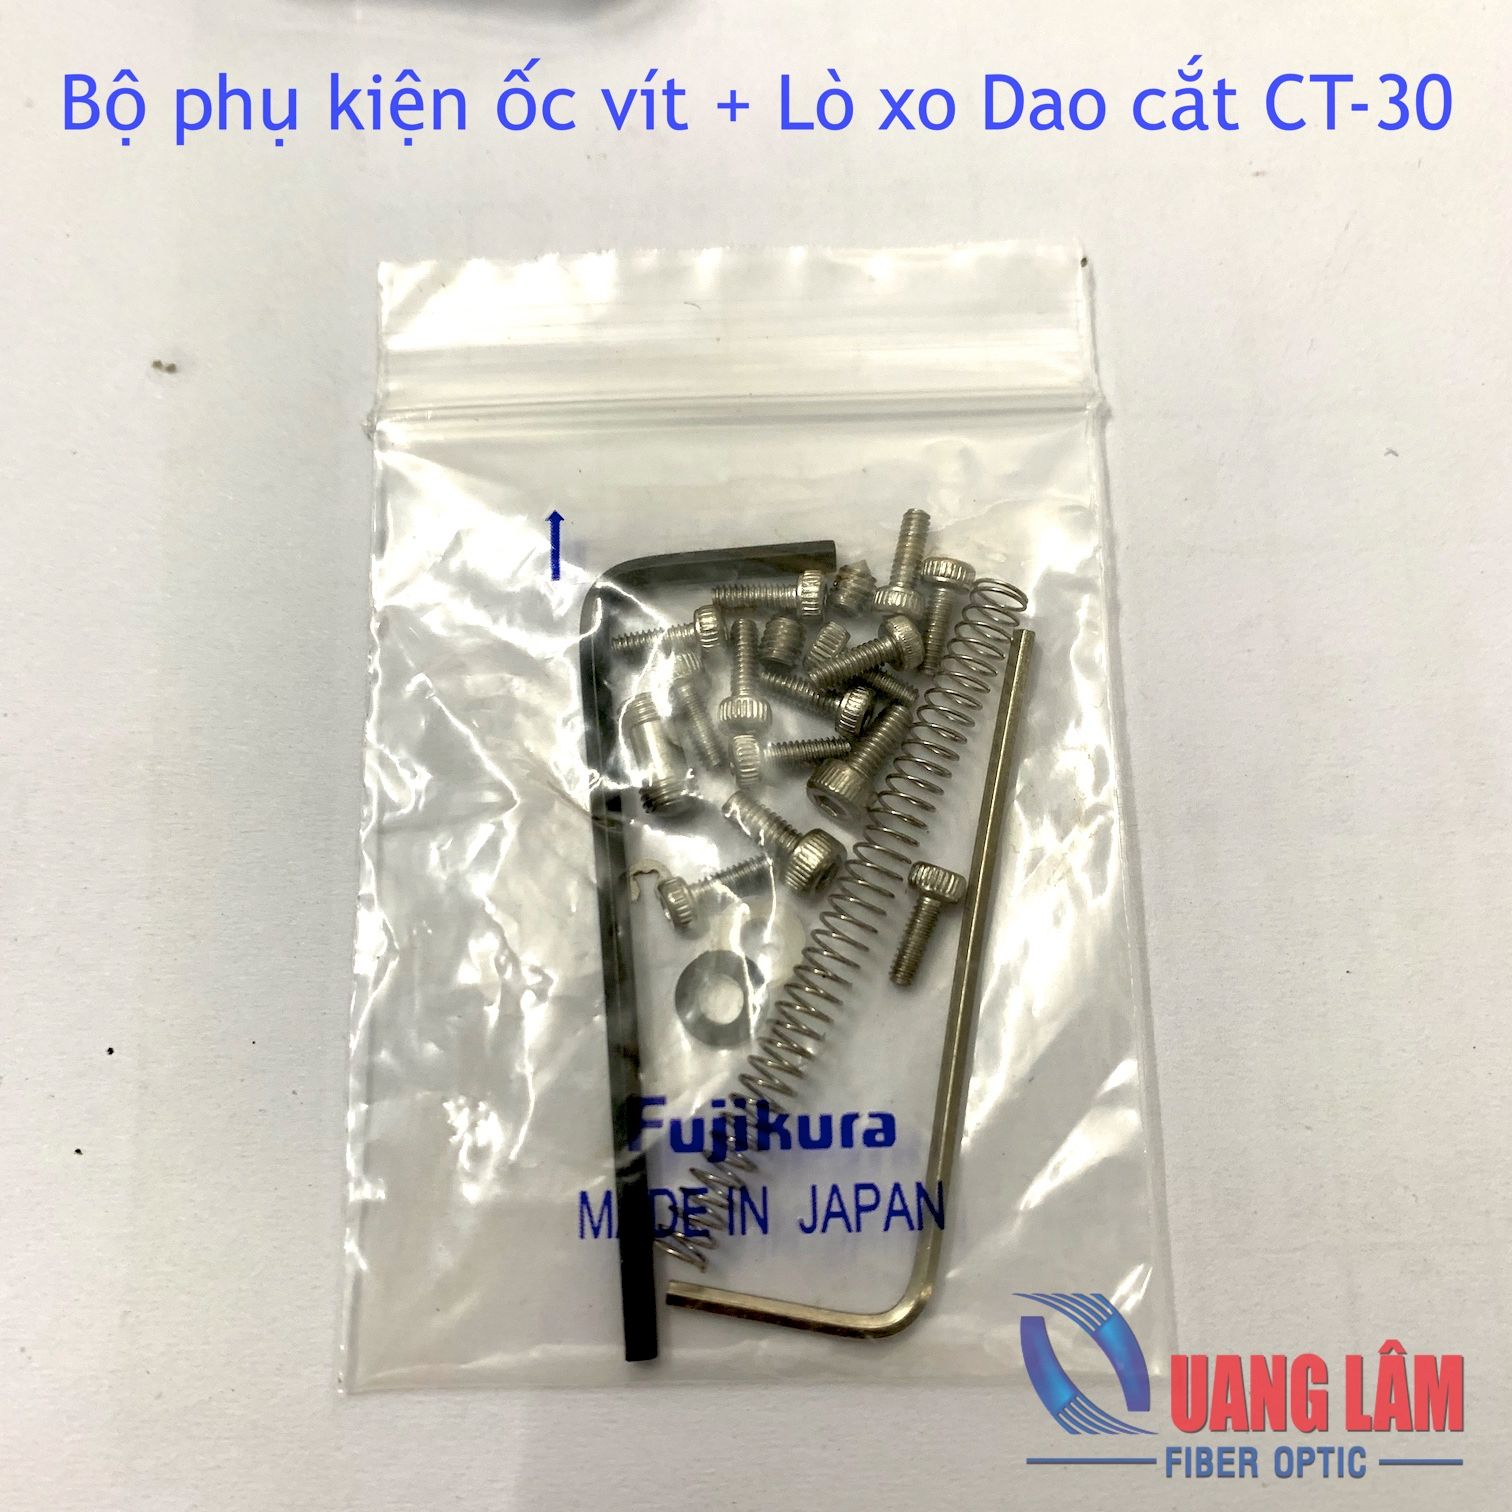 Bộ phụ kiện ốc vít và lo xo thay thế cho Dao cắt Fujikura CT-30